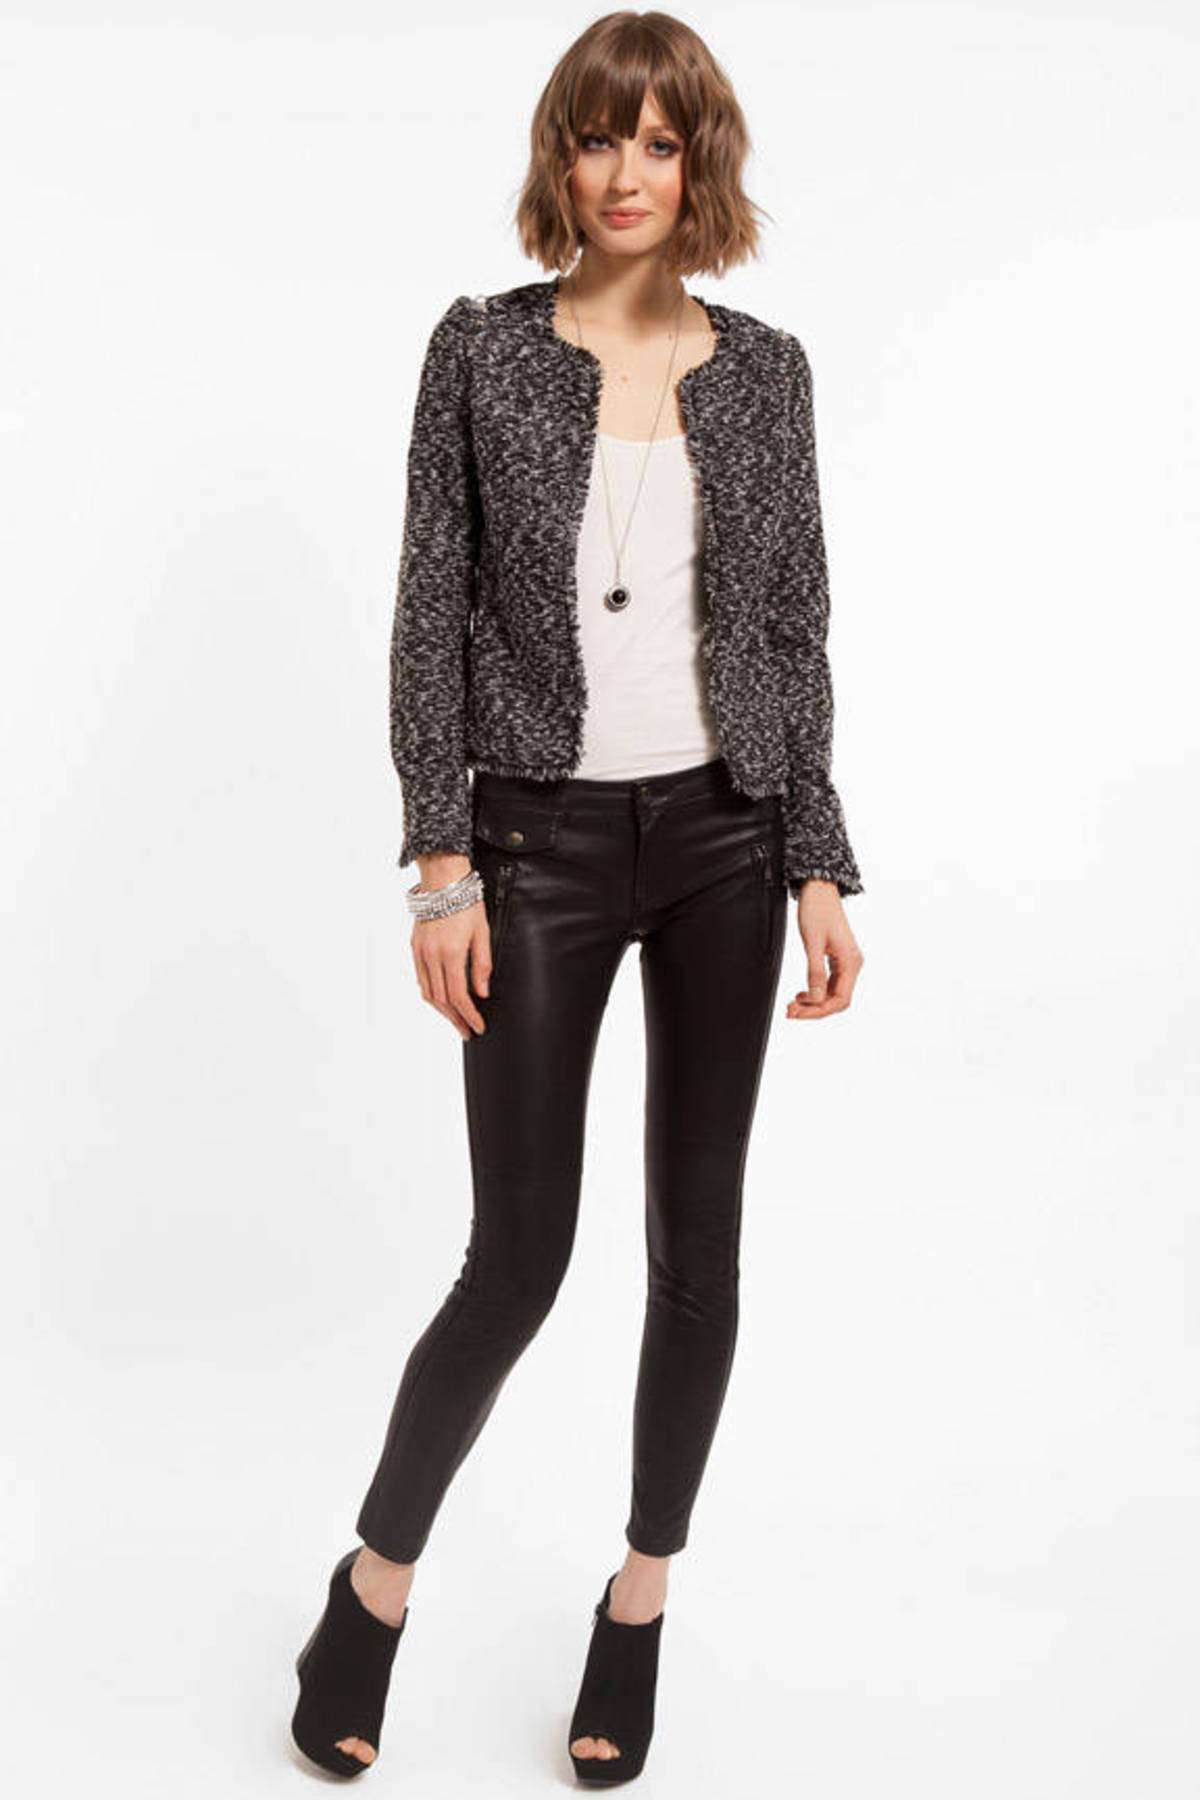 Tara Tweed Jacket in Black and White - $30 | Tobi US